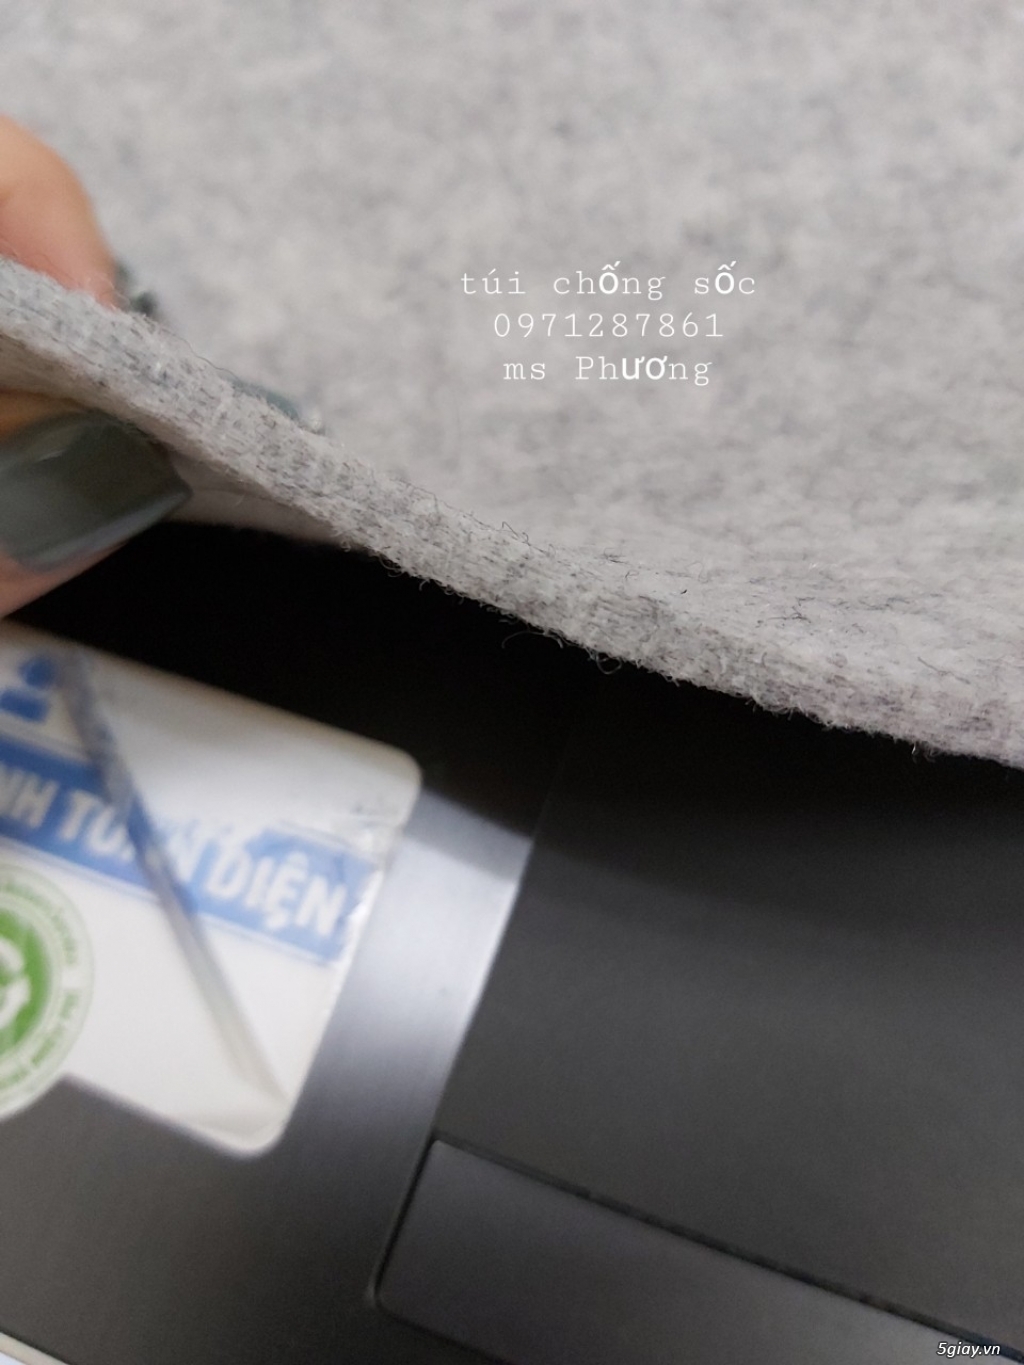 sản xuất vải nỉ dùng làm túi chống sốc, baolo túi xách, lót nệm, sofa - 2